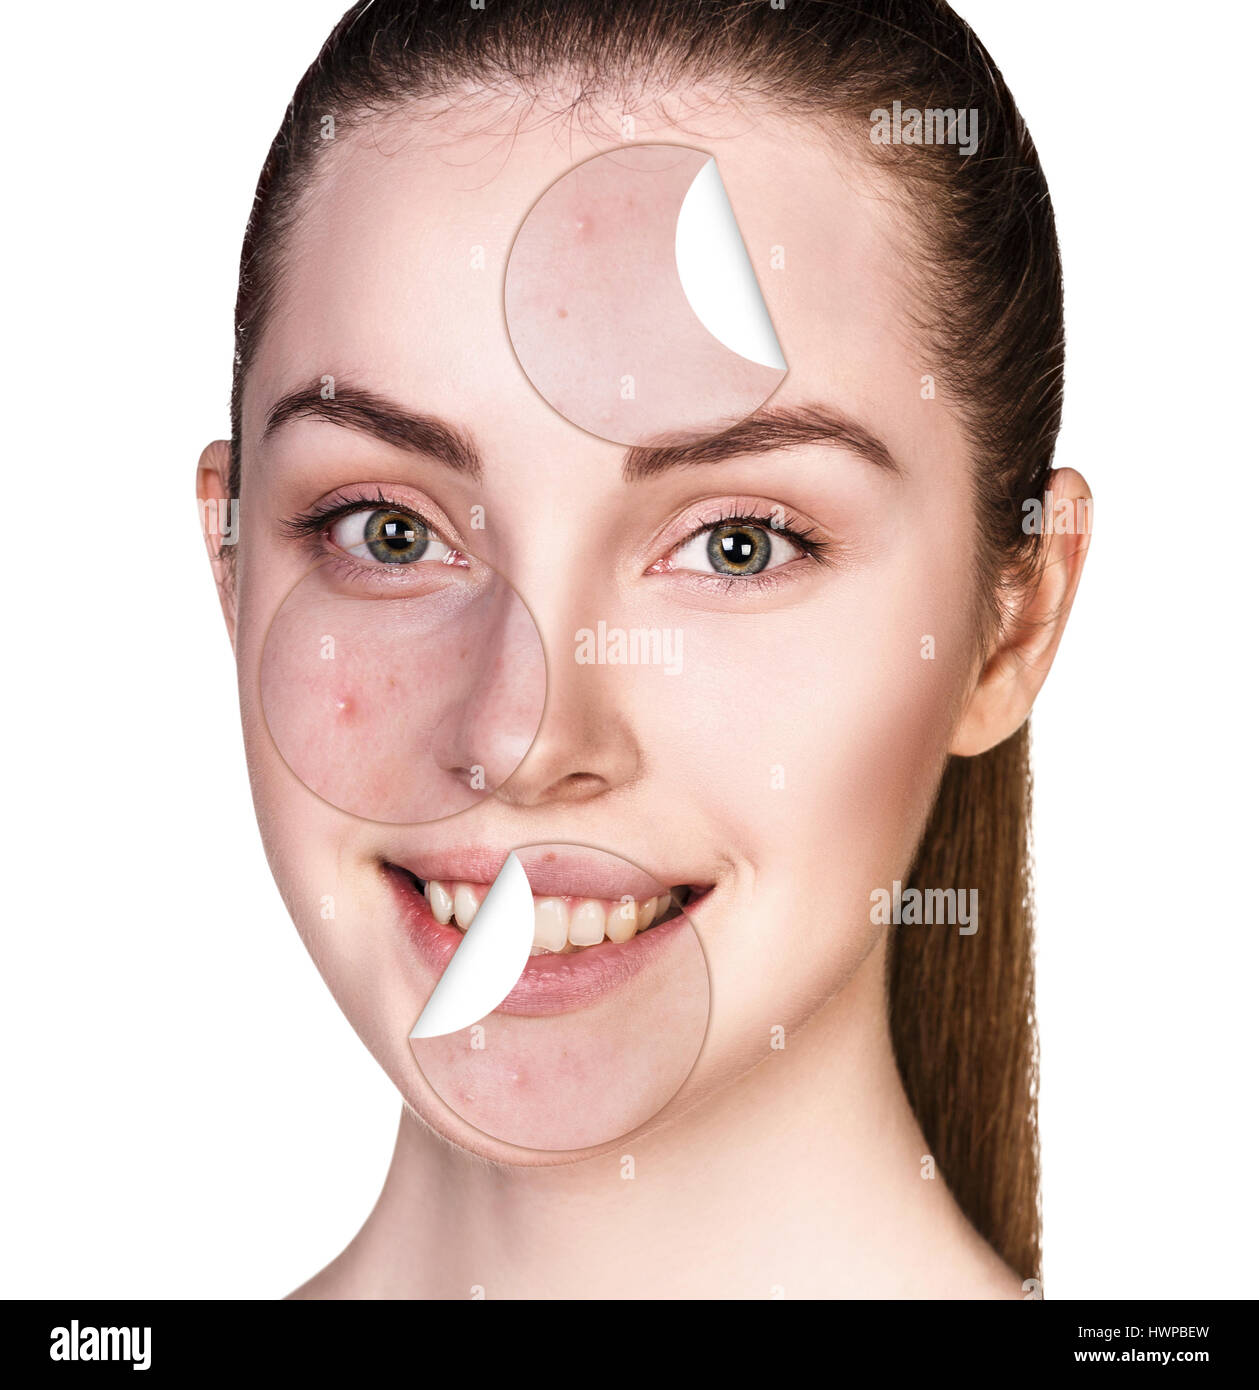 Kreise-Schichten der Haut mit Akne unstick aus gute gesunde Haut der jungen Frau. Stockfoto